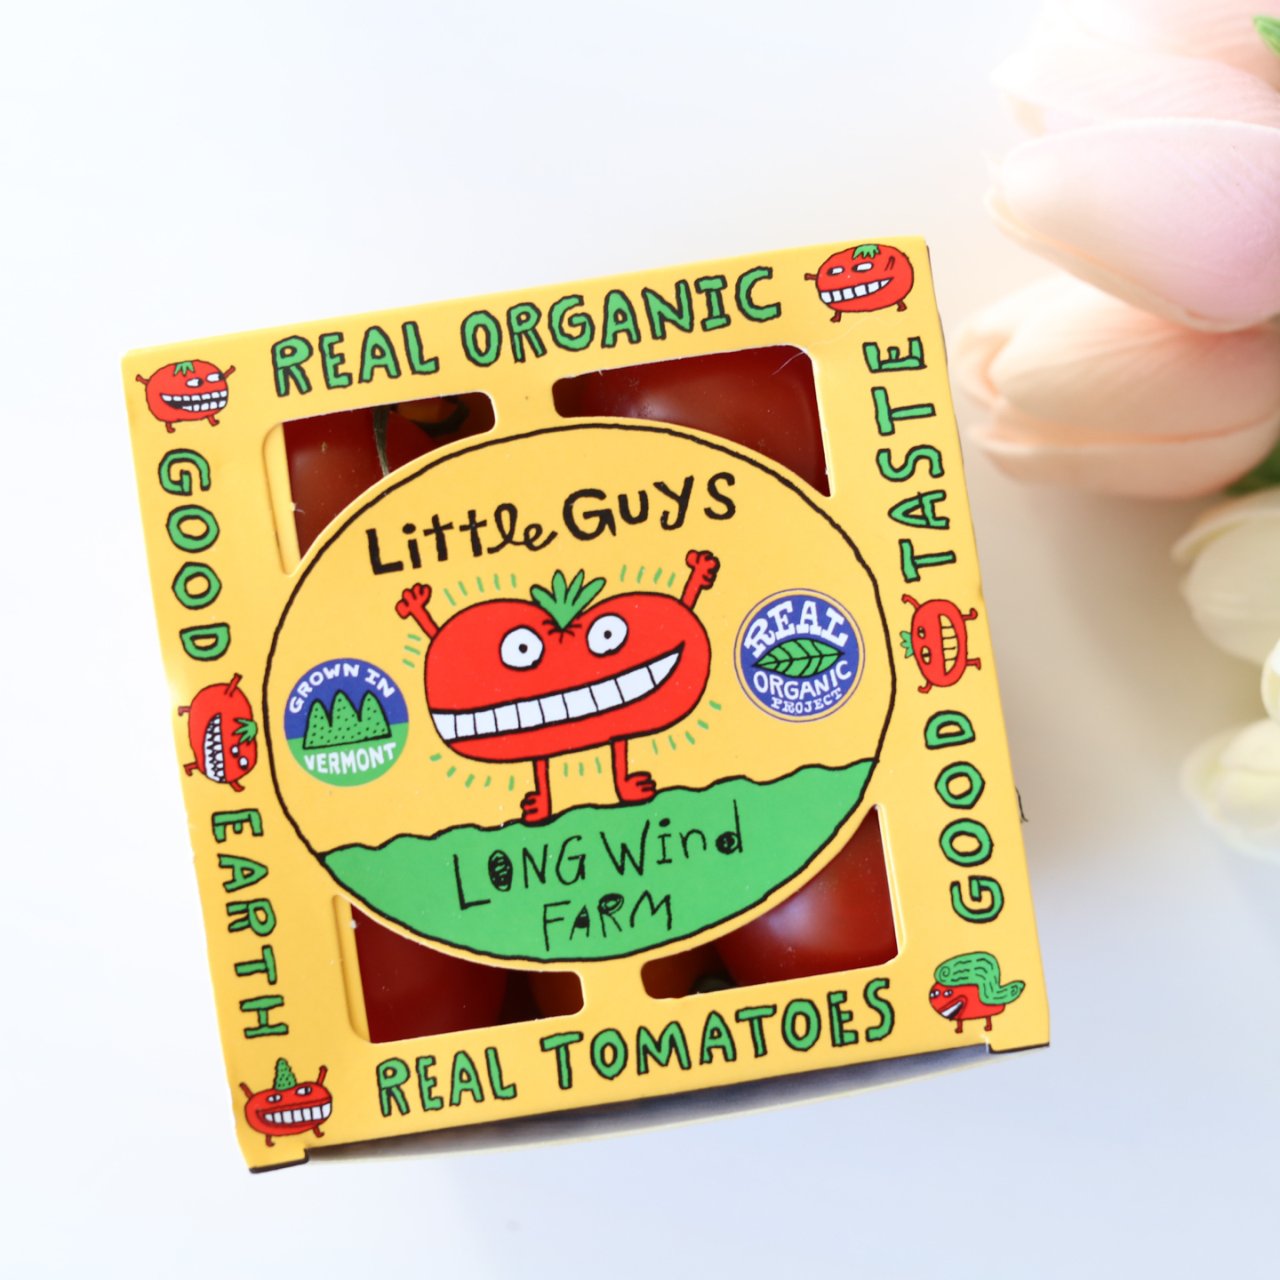 这么可爱的有机番茄你吃过吗🍅...